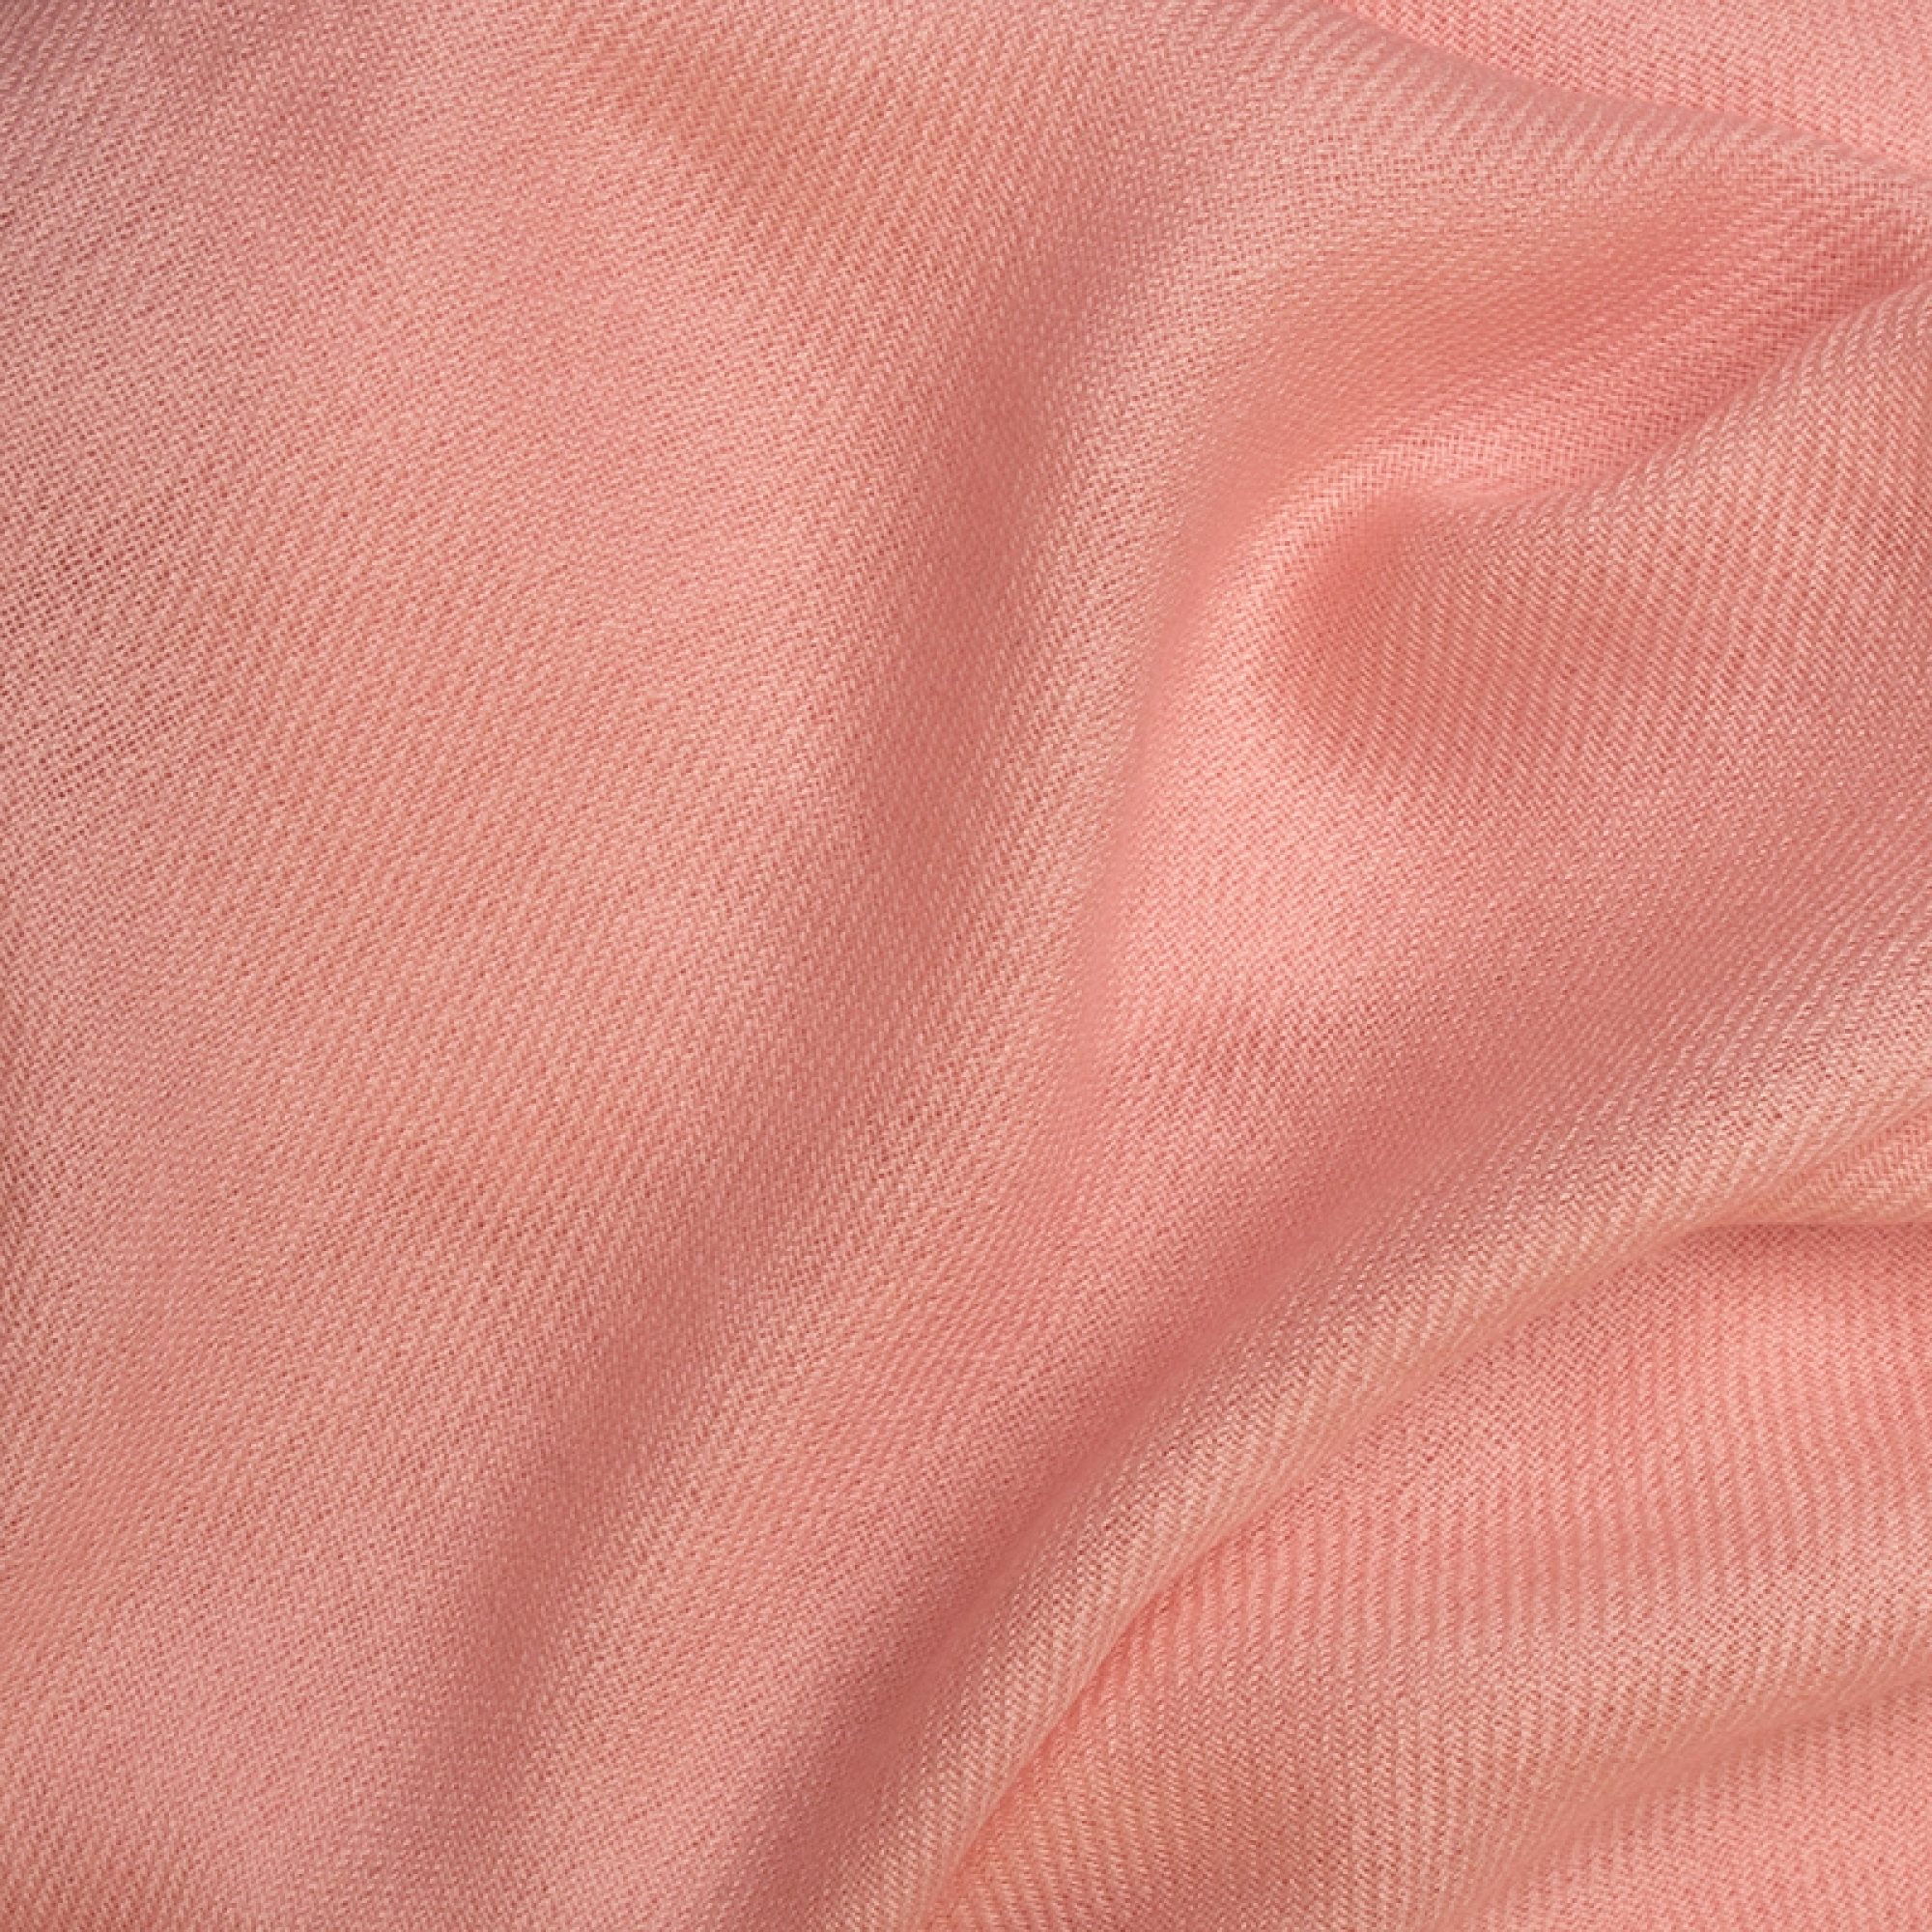 Cashmere accessori cocooning frisbi 147 x 203 rosa crema 147 x 203 cm